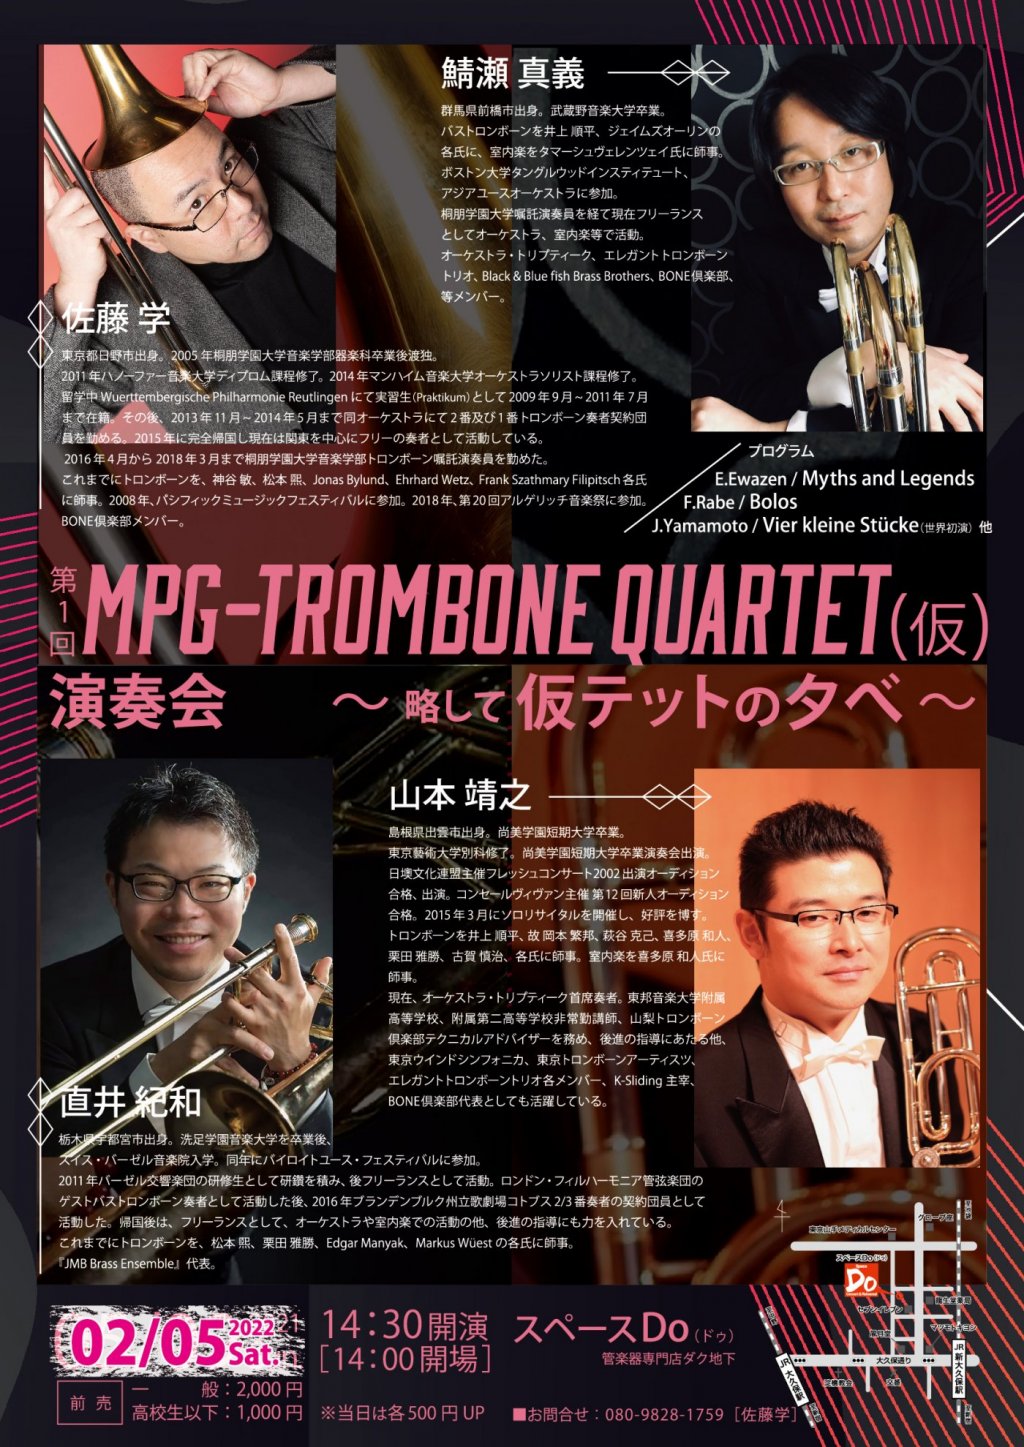 第1回 MPG-Trombone Quartet(仮)演奏会 〜 略して仮テットの夕べ 〜